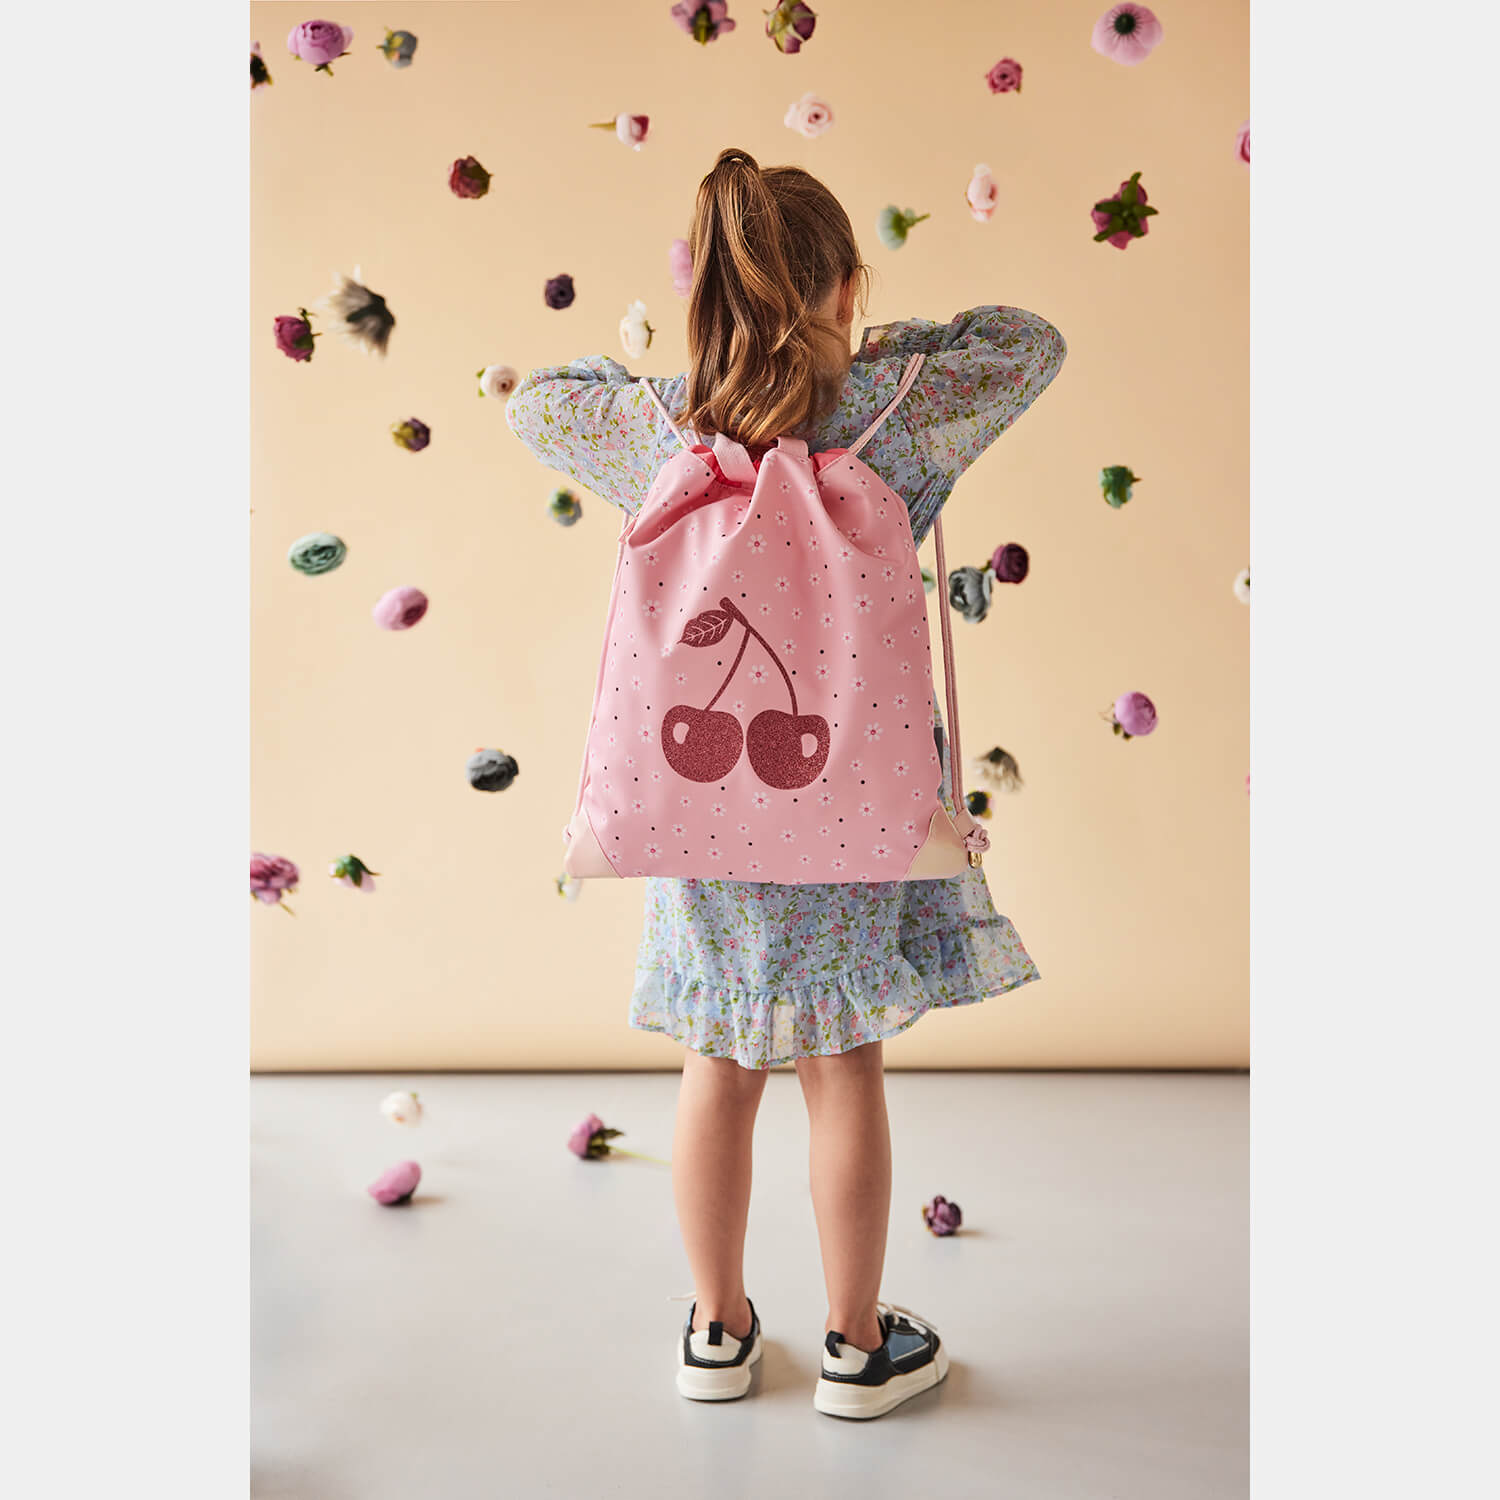 School Gym bag Cherry Blossom